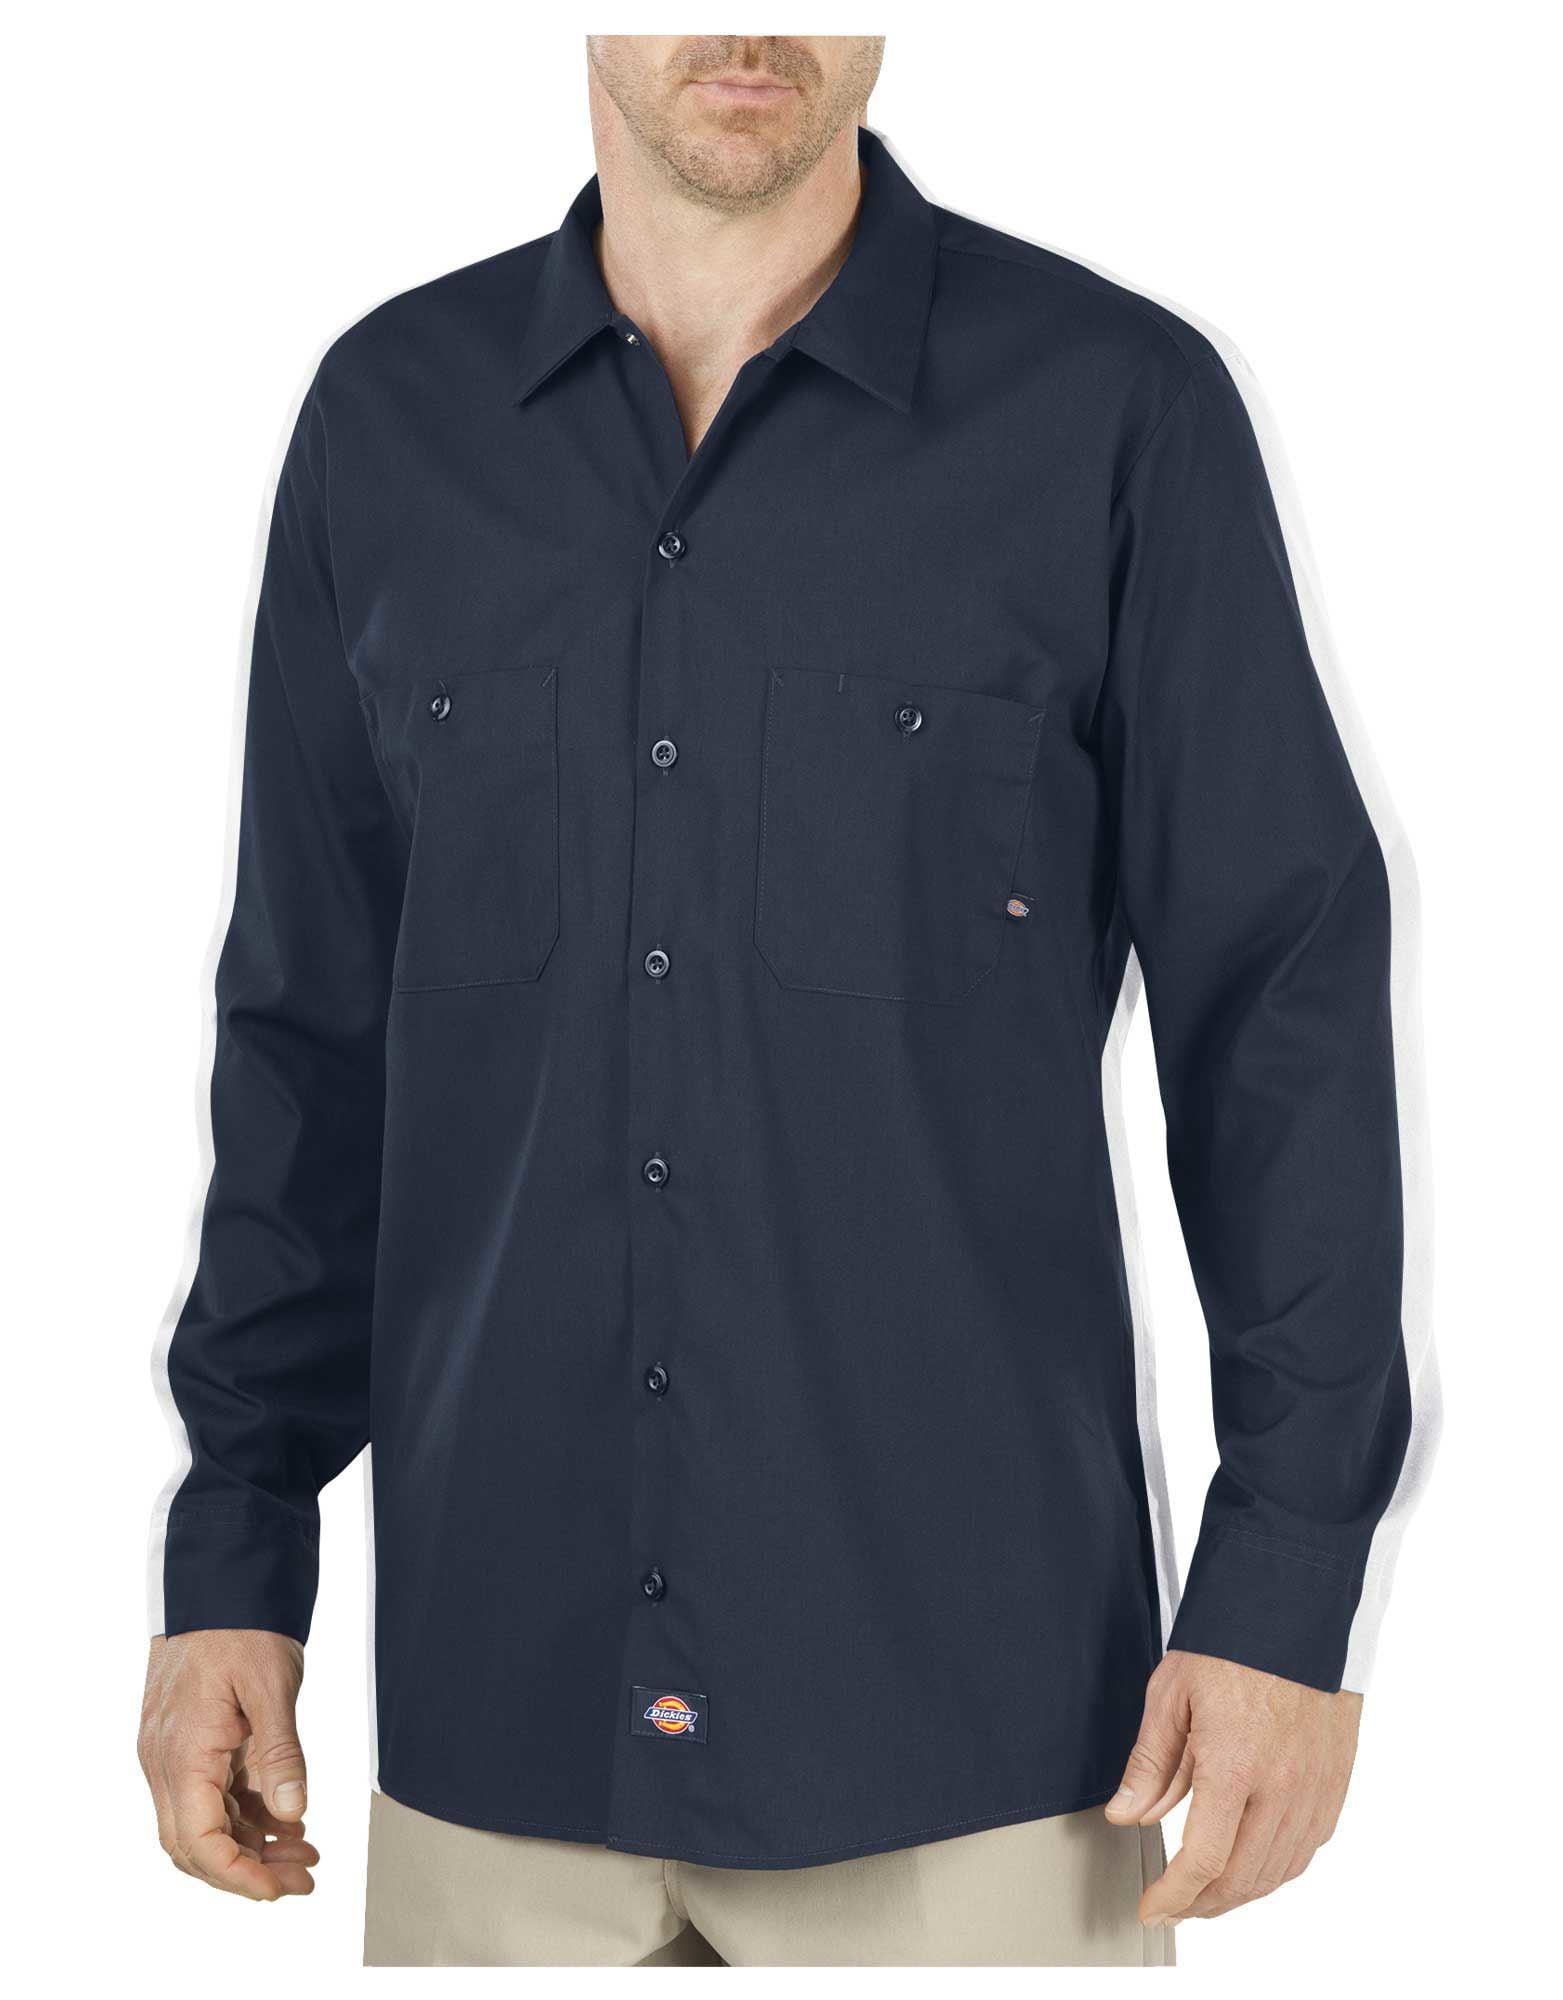 Dickies Mens 4.25 oz. Industrial Long-Sleeve Work Shirt - Walmart.com